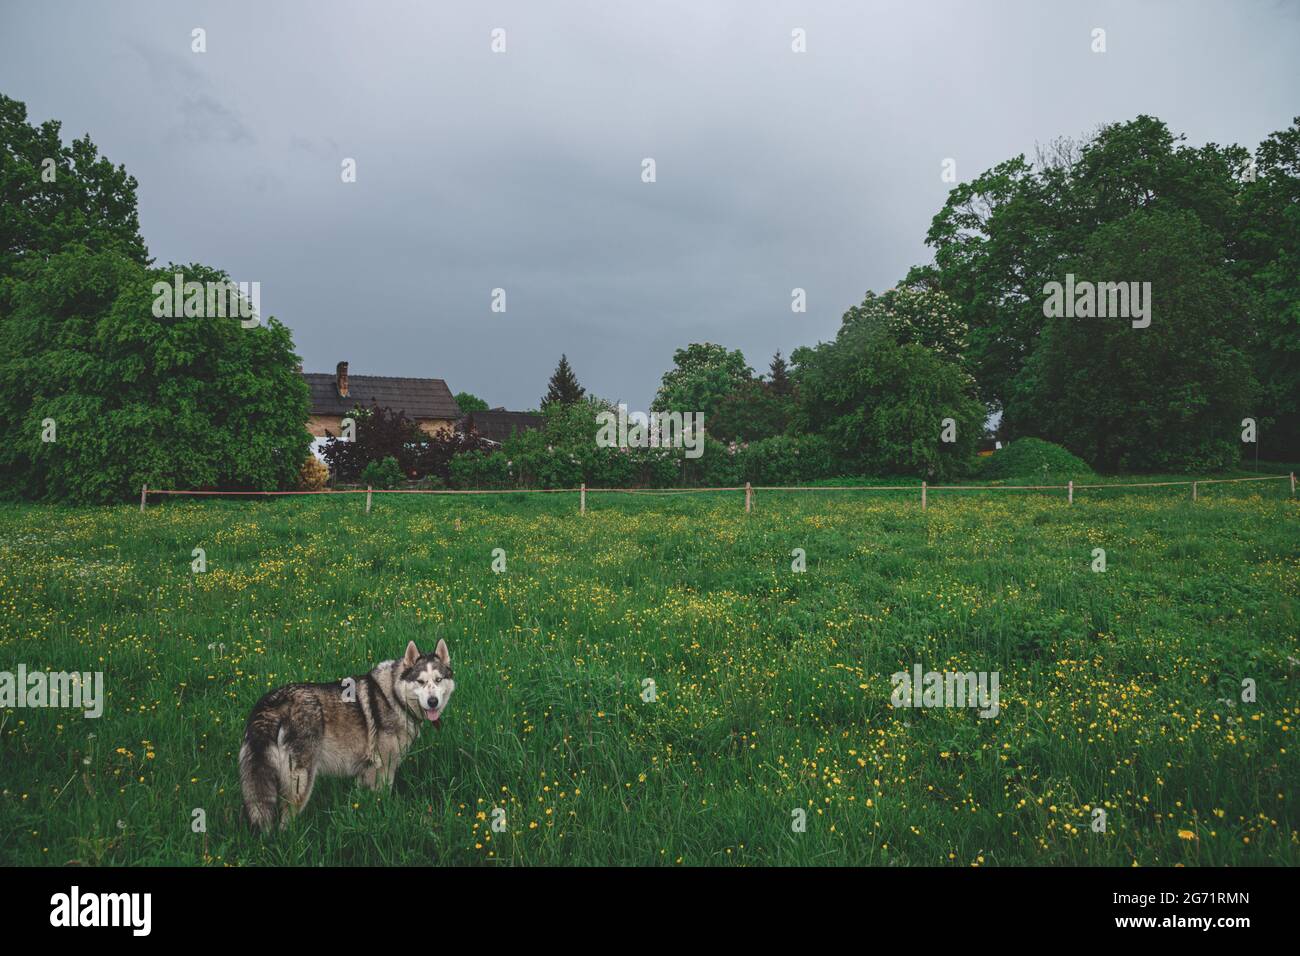 Un chien Husky adulte marche dans un pré sur l'herbe verte. Maison en arrière-plan. Clôture de volaille électrique. Début de l'été Banque D'Images